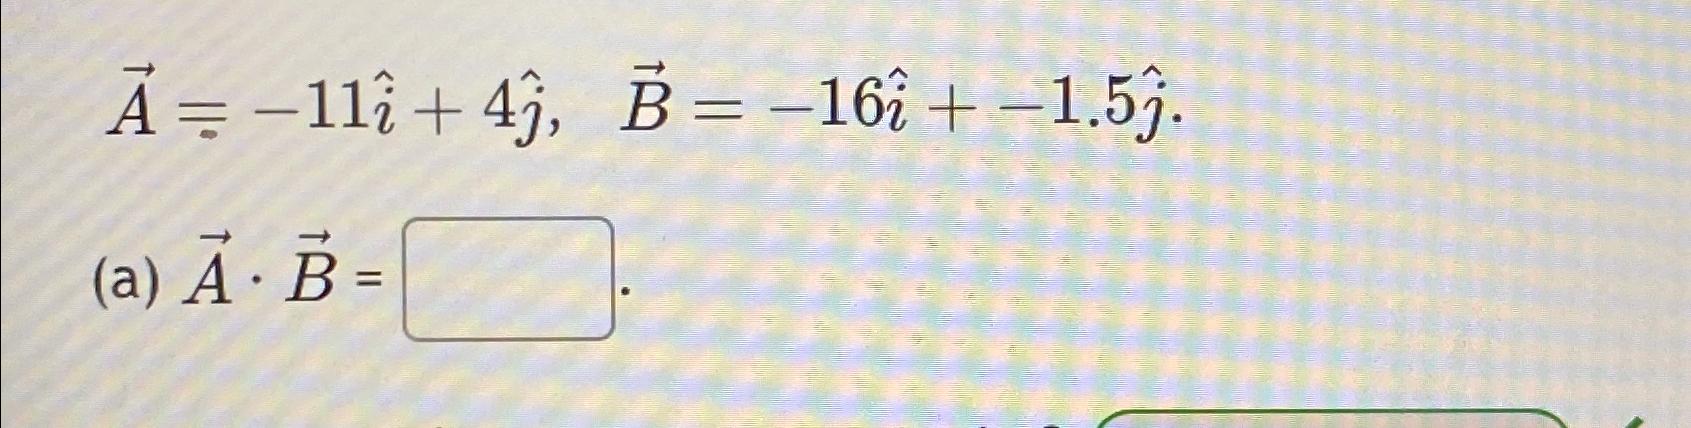 A = 11+4, B = 16 + 1.5. (a) . B =